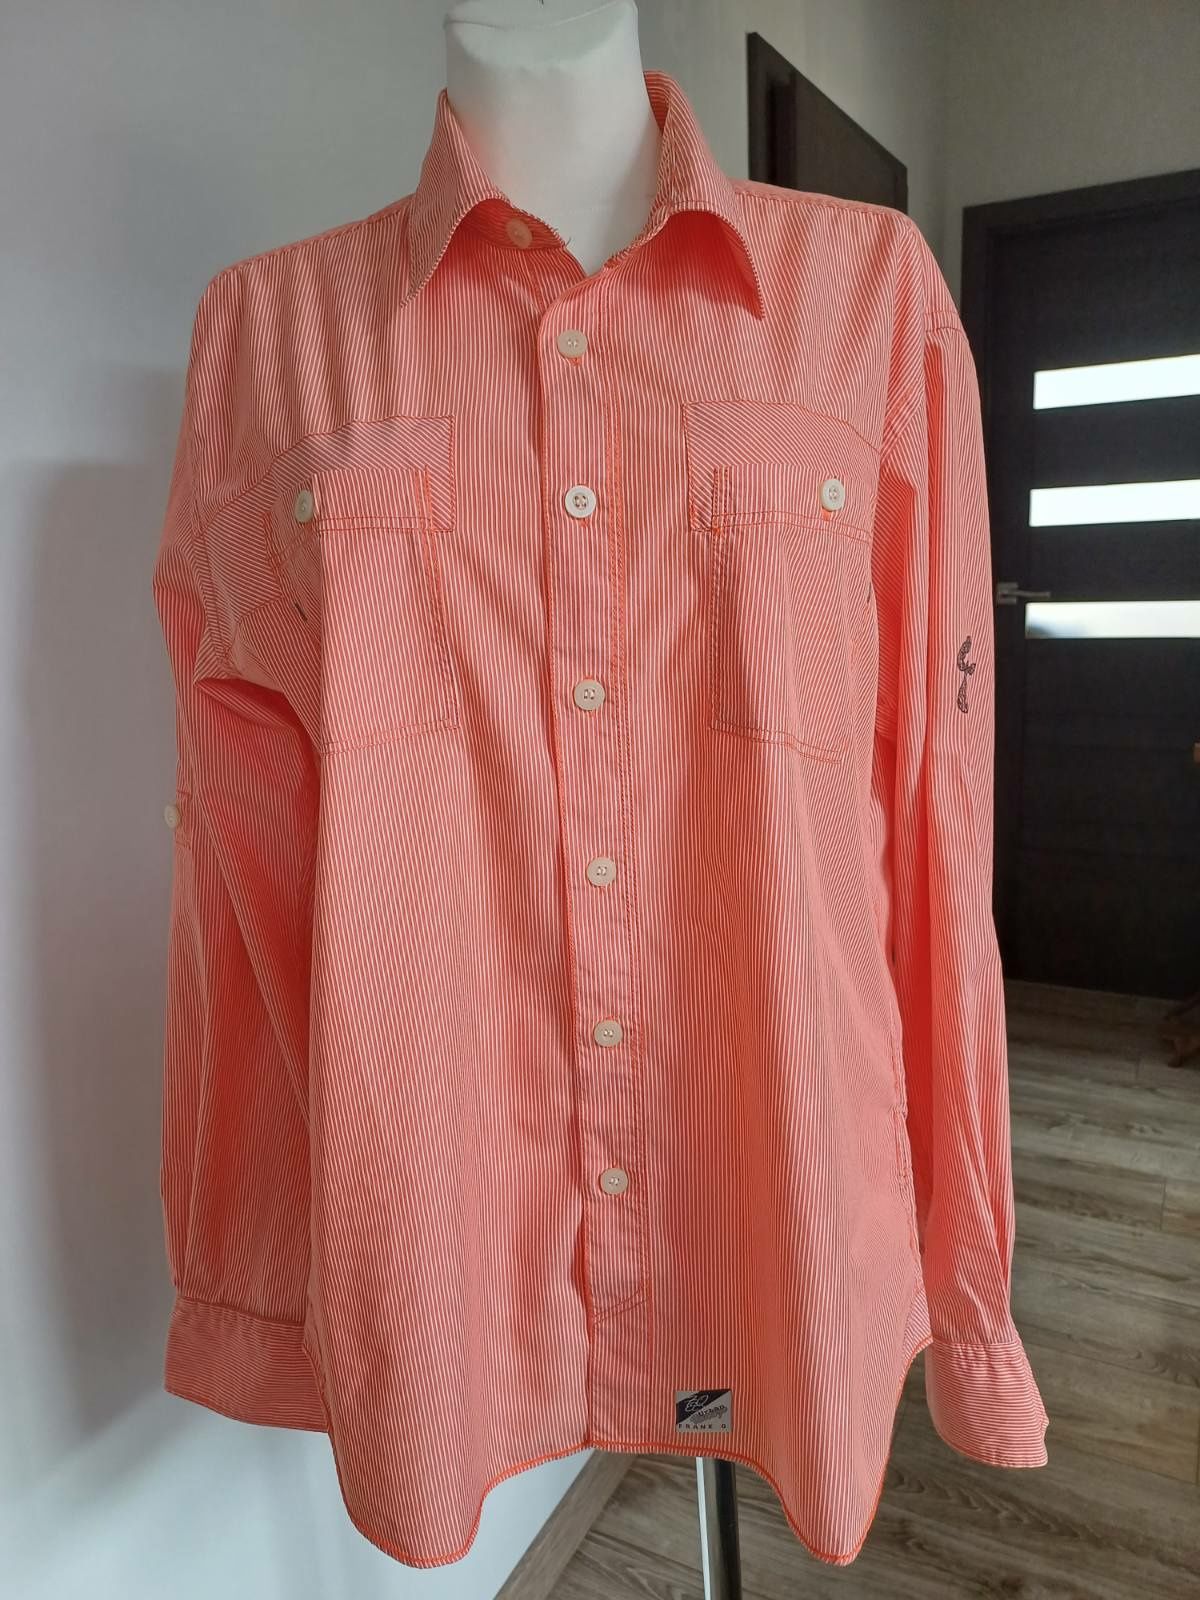 Koszula męska pomarańczowo-biała Urban vintage rozm XL.